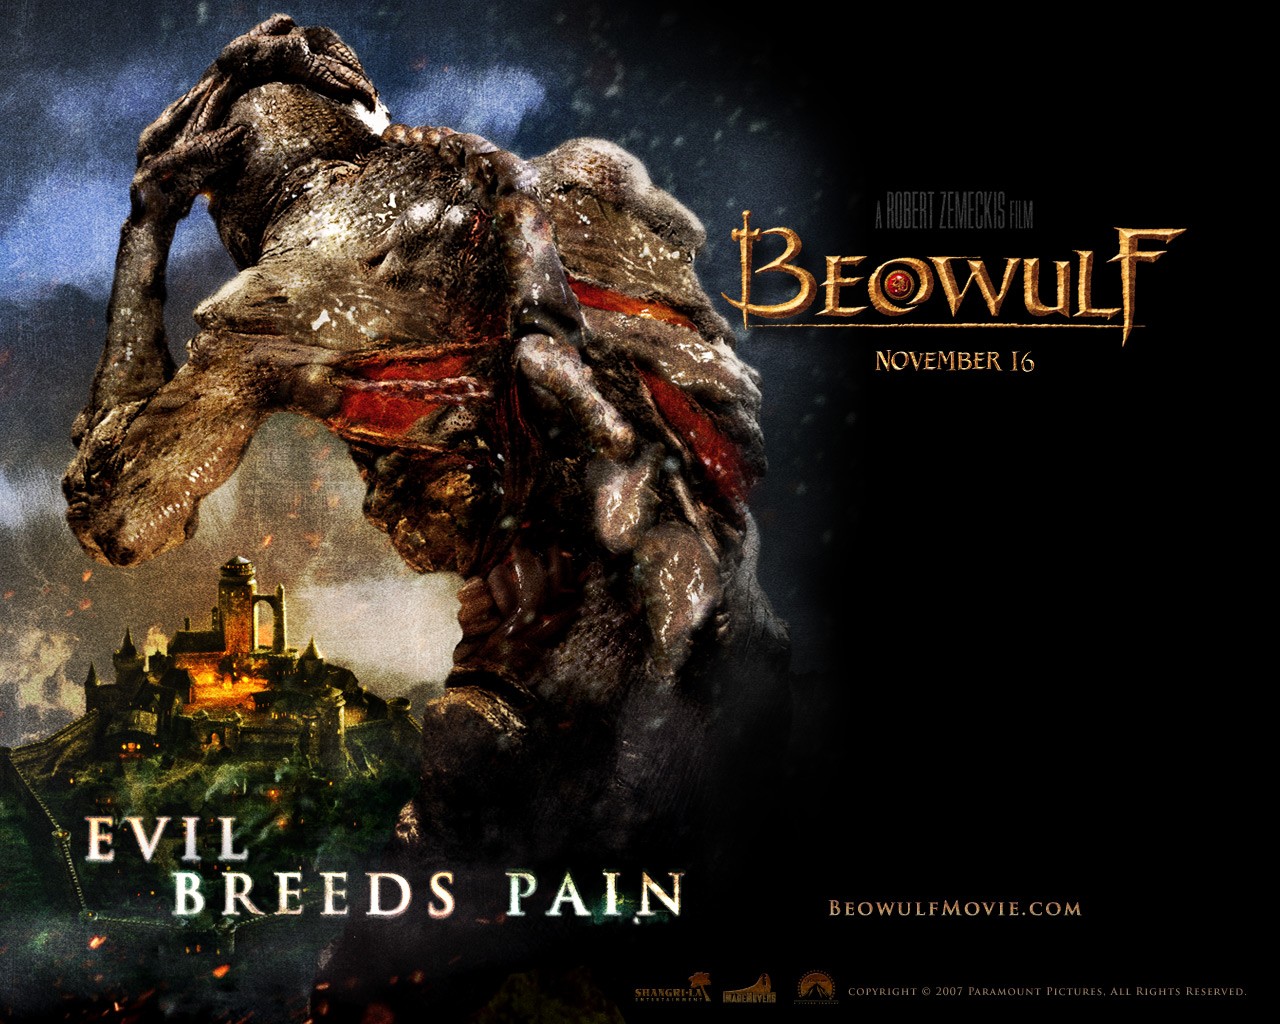 壁纸1280x1024电影壁纸 贝奥武夫 降龙伏魔 Beowulf 2007 贝奥武夫 北海的诅咒 贝奥武夫 电影壁纸 Movie Wallpaper Beowulf 2007壁纸 《贝奥武夫 Beowulf(2007)》壁纸 《贝奥武夫 Beowulf(2007)》图片 《贝奥武夫 Beowulf(2007)》素材 影视壁纸 影视图库 影视图片素材桌面壁纸